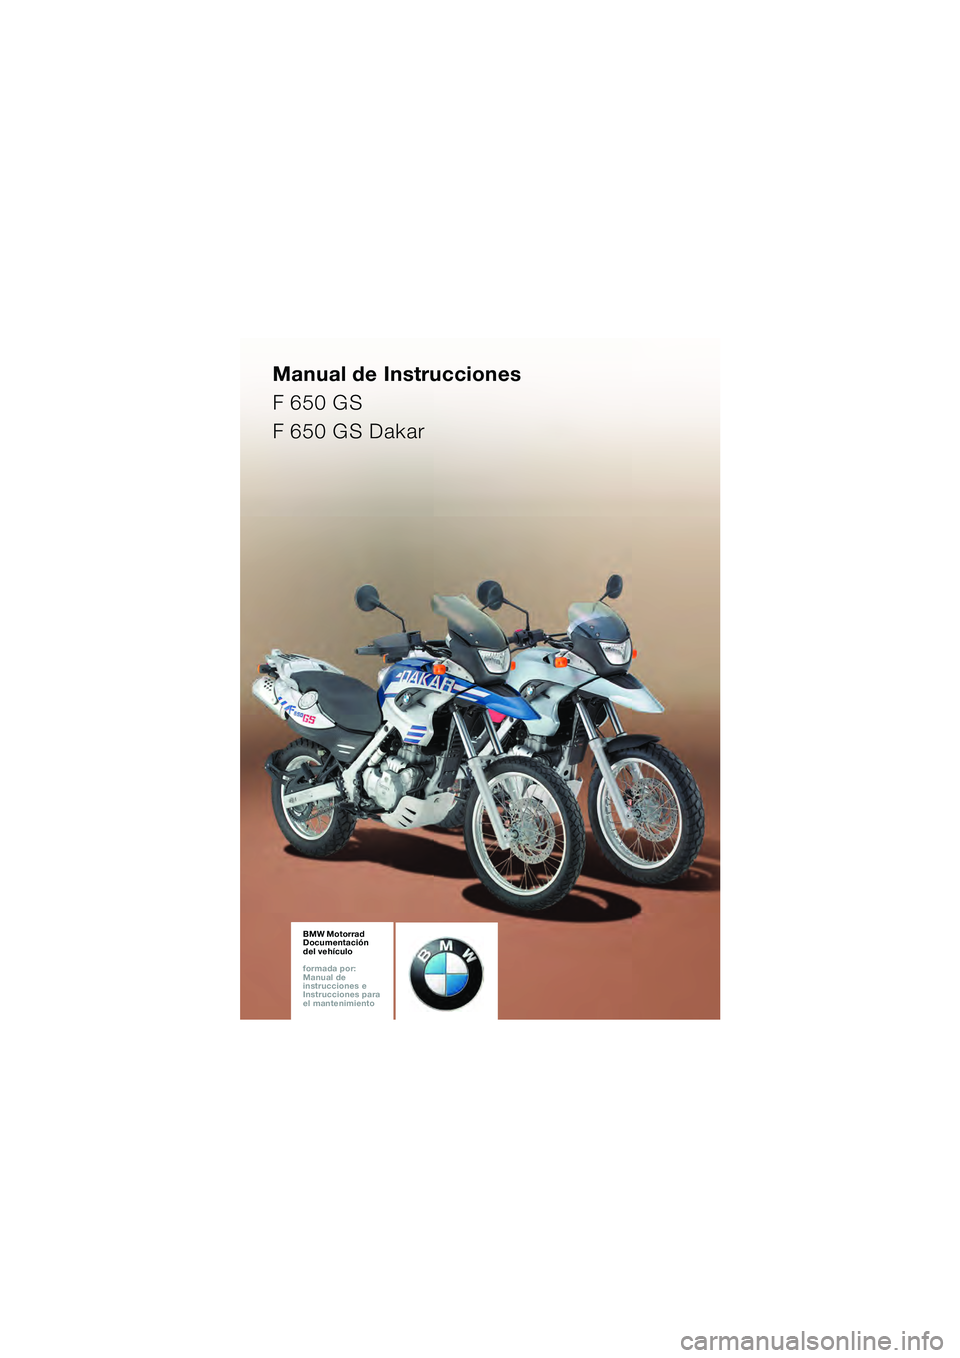 BMW MOTORRAD F 650 GS 2003  Manual de instrucciones (in Spanish) Manual de Instrucciones
F 650 GS
F 650 GS Dakar
BMW Motorrad
Documentación  
del vehículo
formada por:  
Manual de  
instrucciones e  
Instrucciones para  
el mantenimientoBMW Motorrad
Documentació